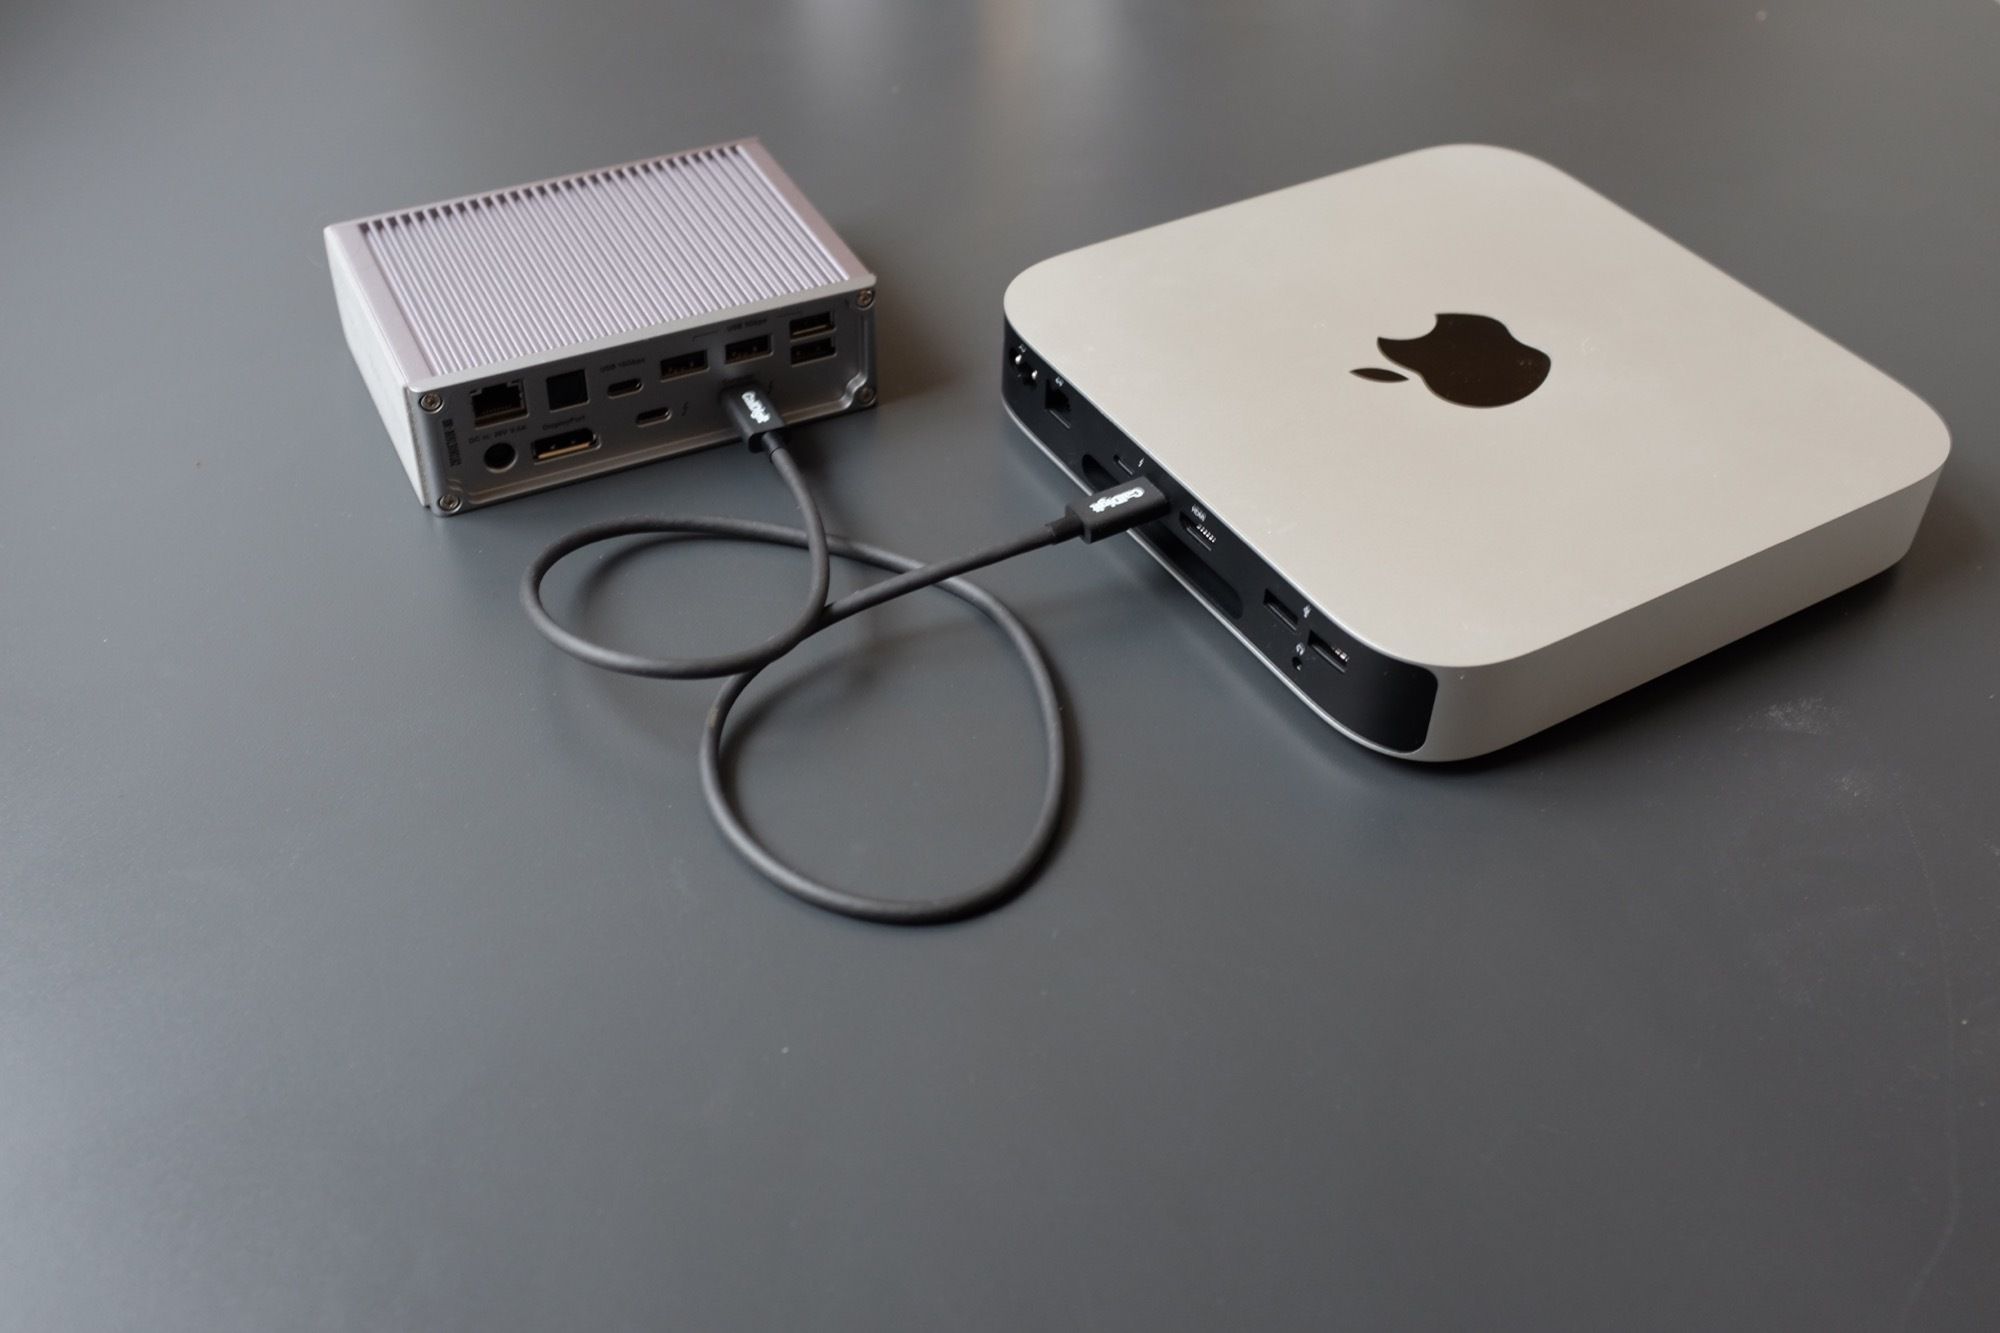 Dokovací stanice CalDigit TS3 + připojená k počítači Mac Mini